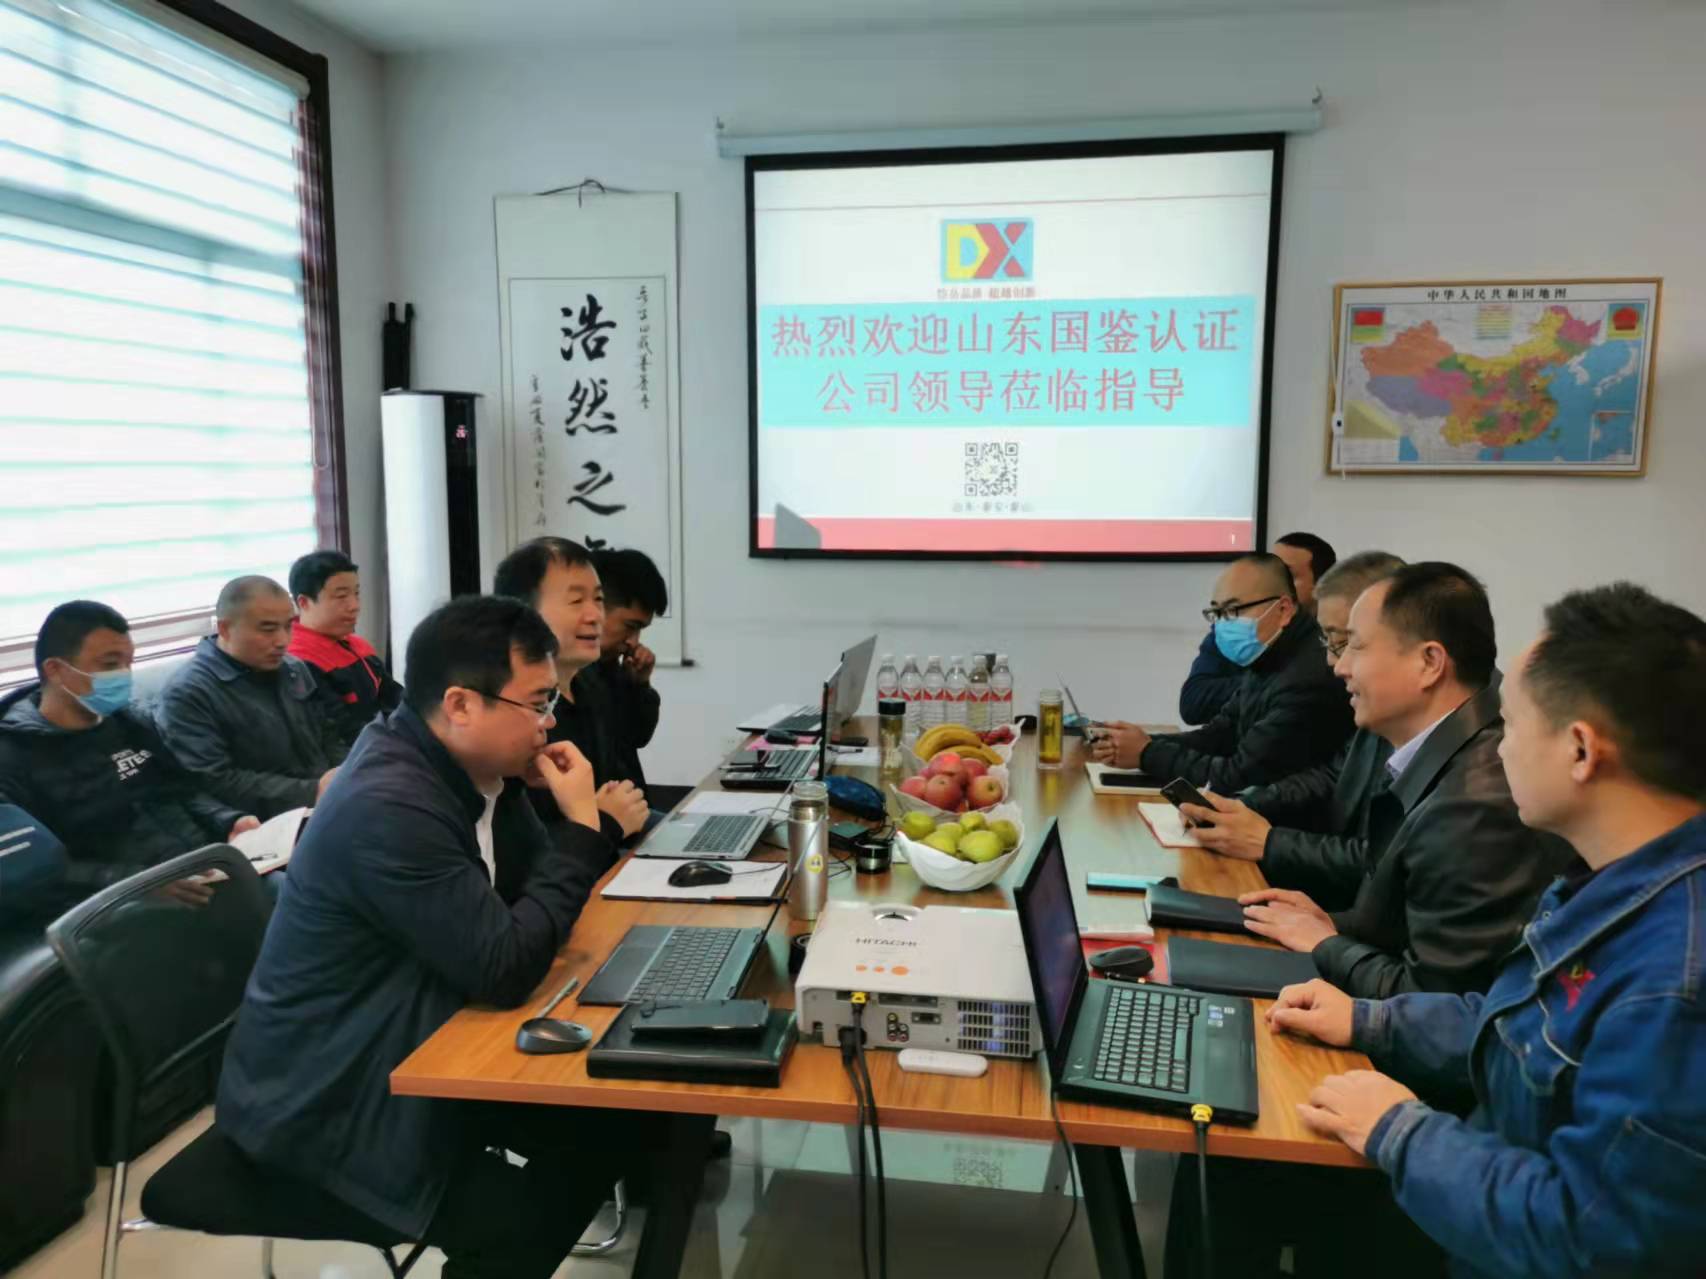 Компания Shandong Daixin Intelligent Technology Co., Ltd. прошла трехсистемный сертификационный аудит качества, окружающей среды и гигиены труда.